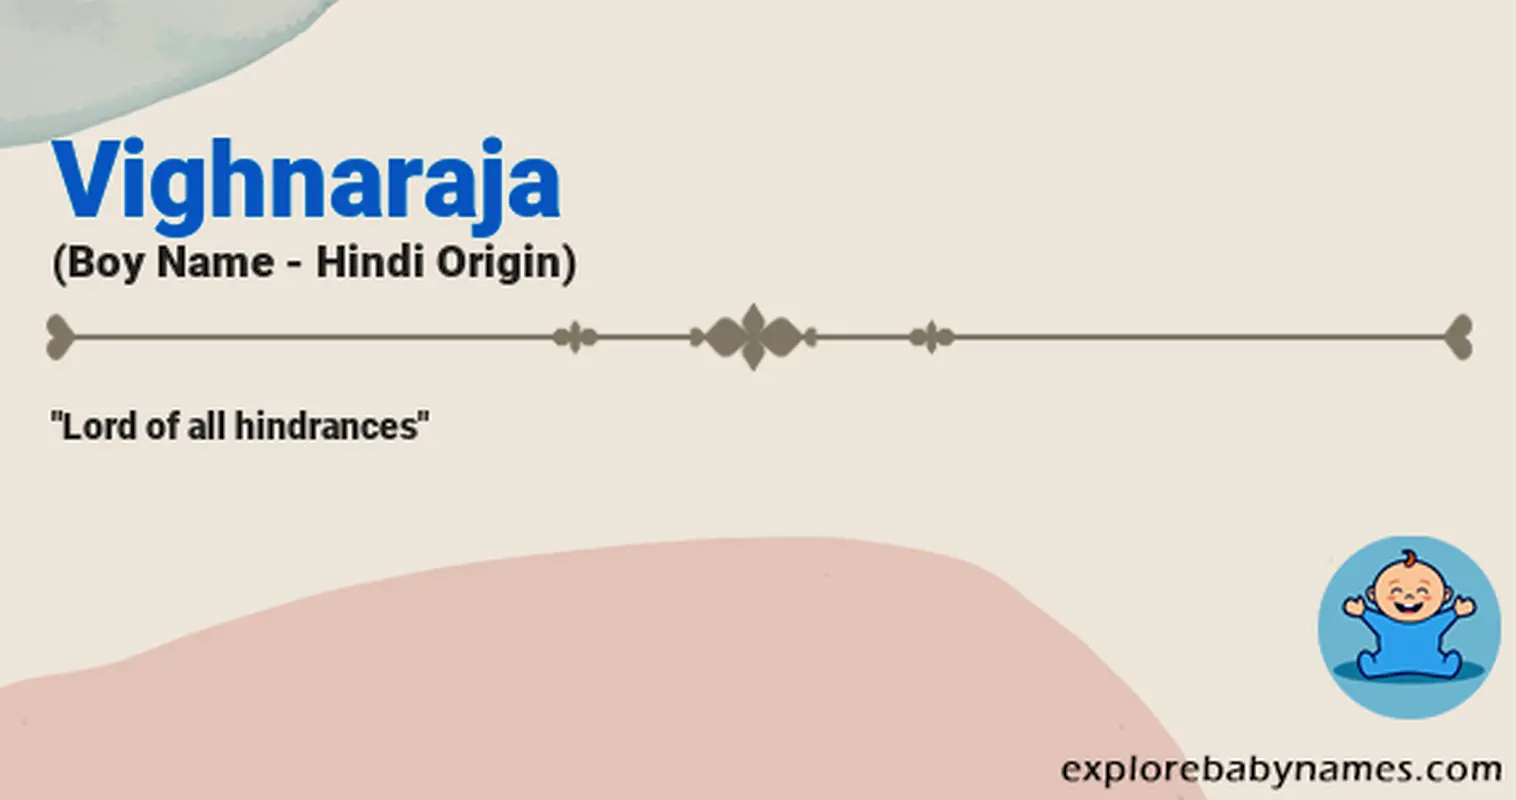 Meaning of Vighnaraja